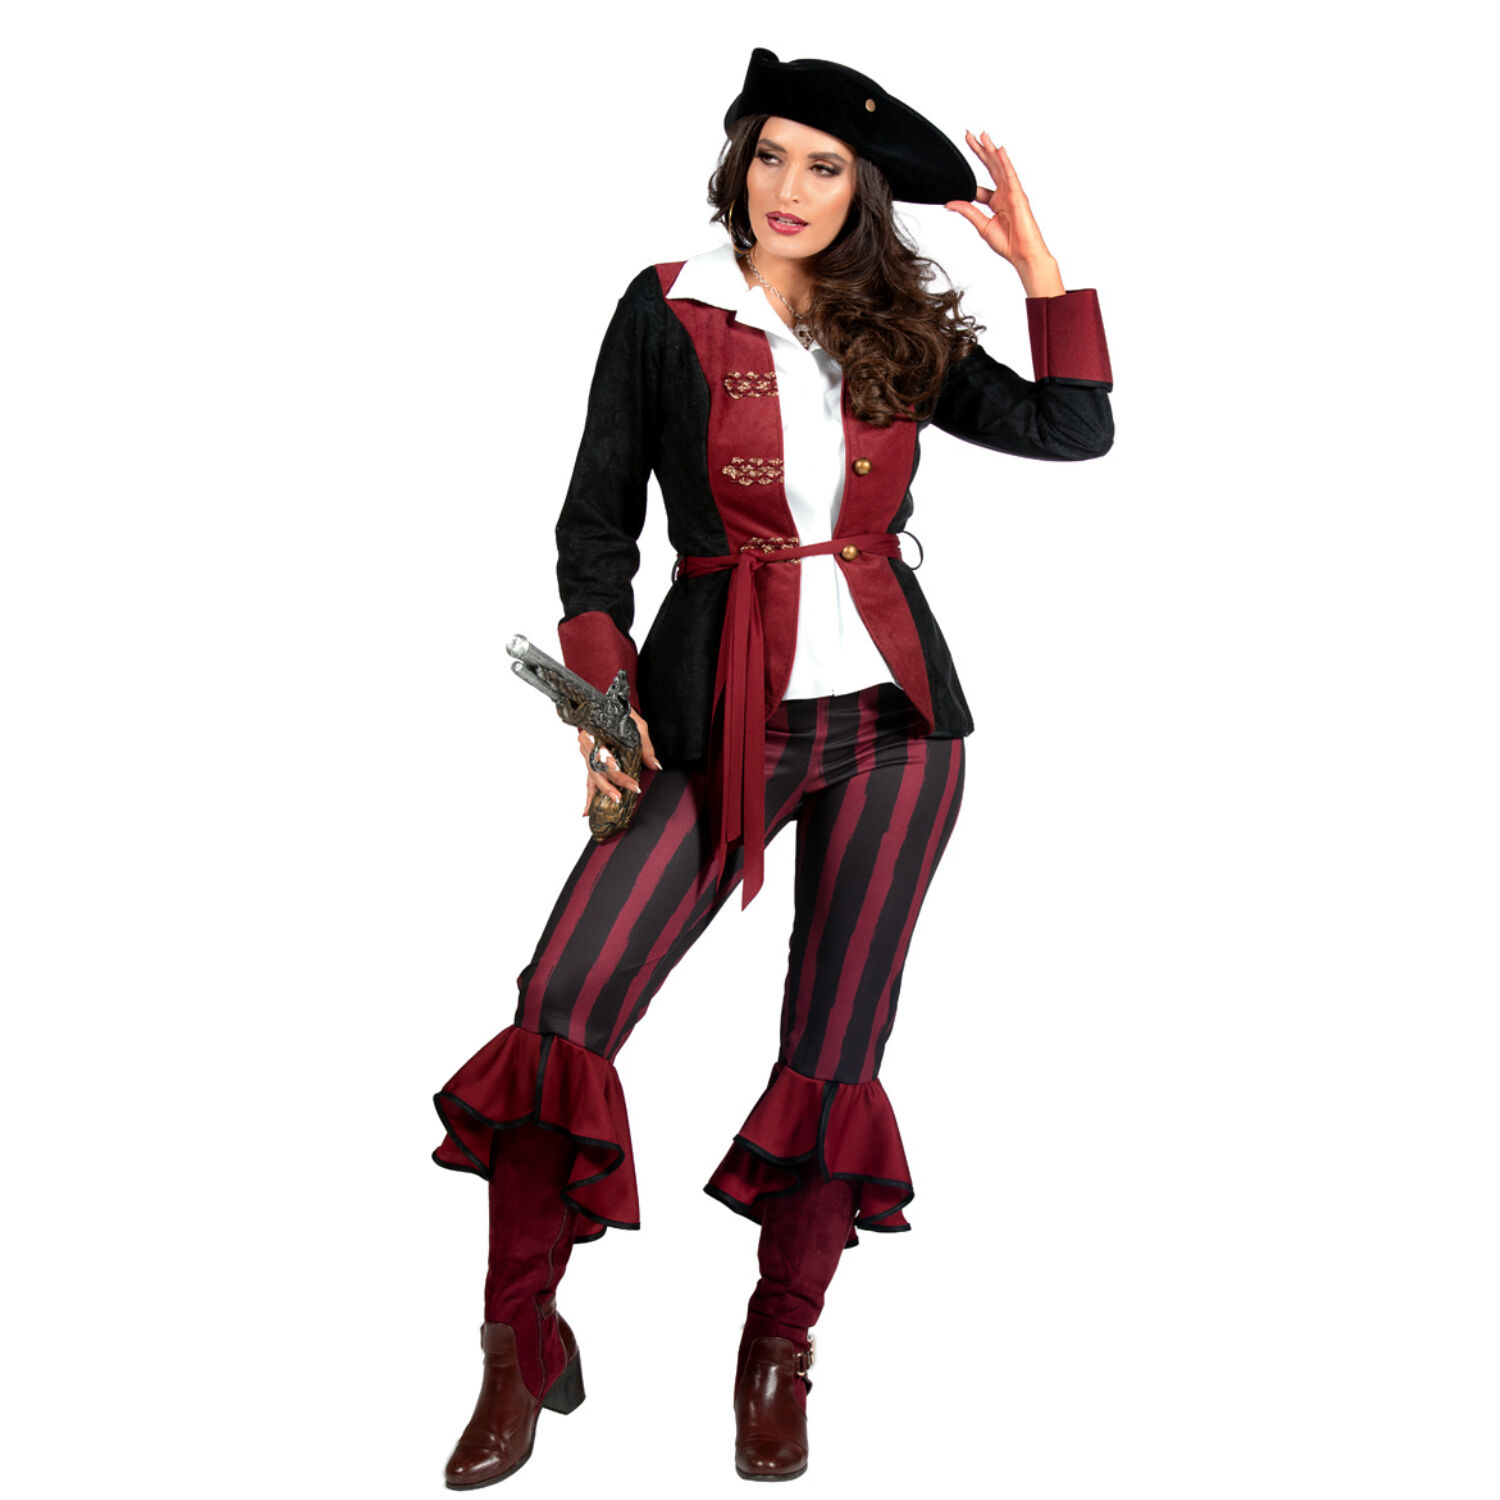 NEU Damen-Kostüm Piratin, 3-tlg. mit Hose, Jacke und Gürtel, burgund-schwarz, Gr. 36